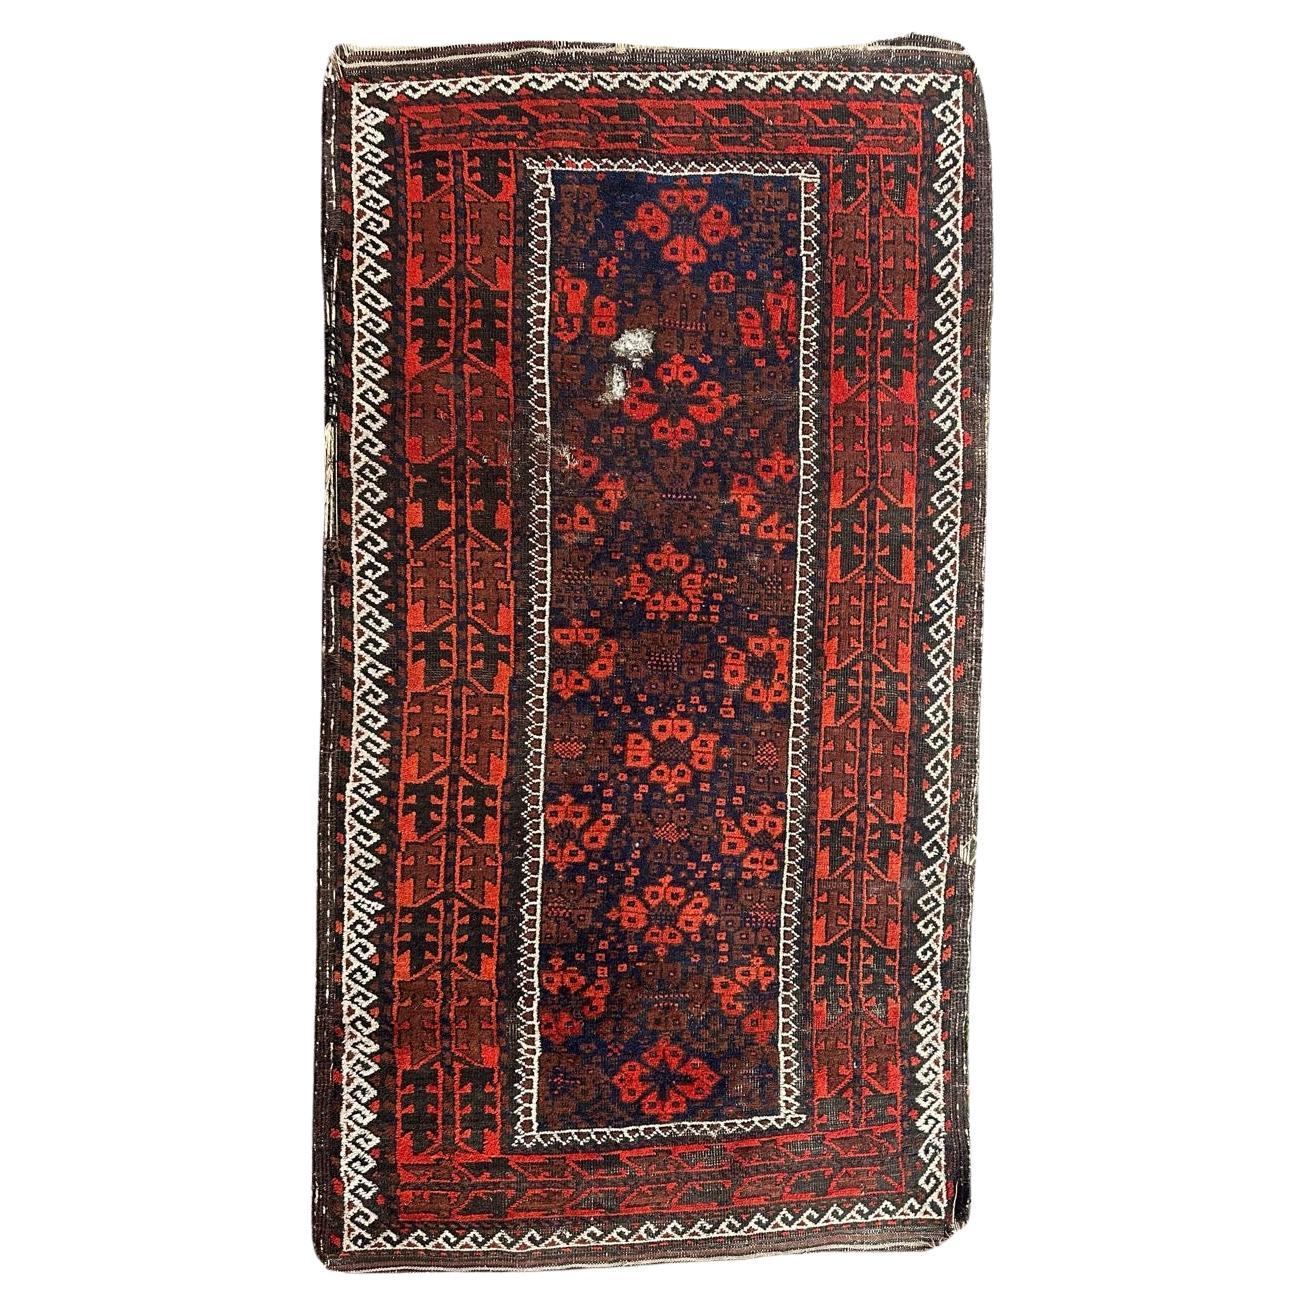 Le joli tapis antique turkmène Baluch de Bobyrug, qui a subi des dégradations 